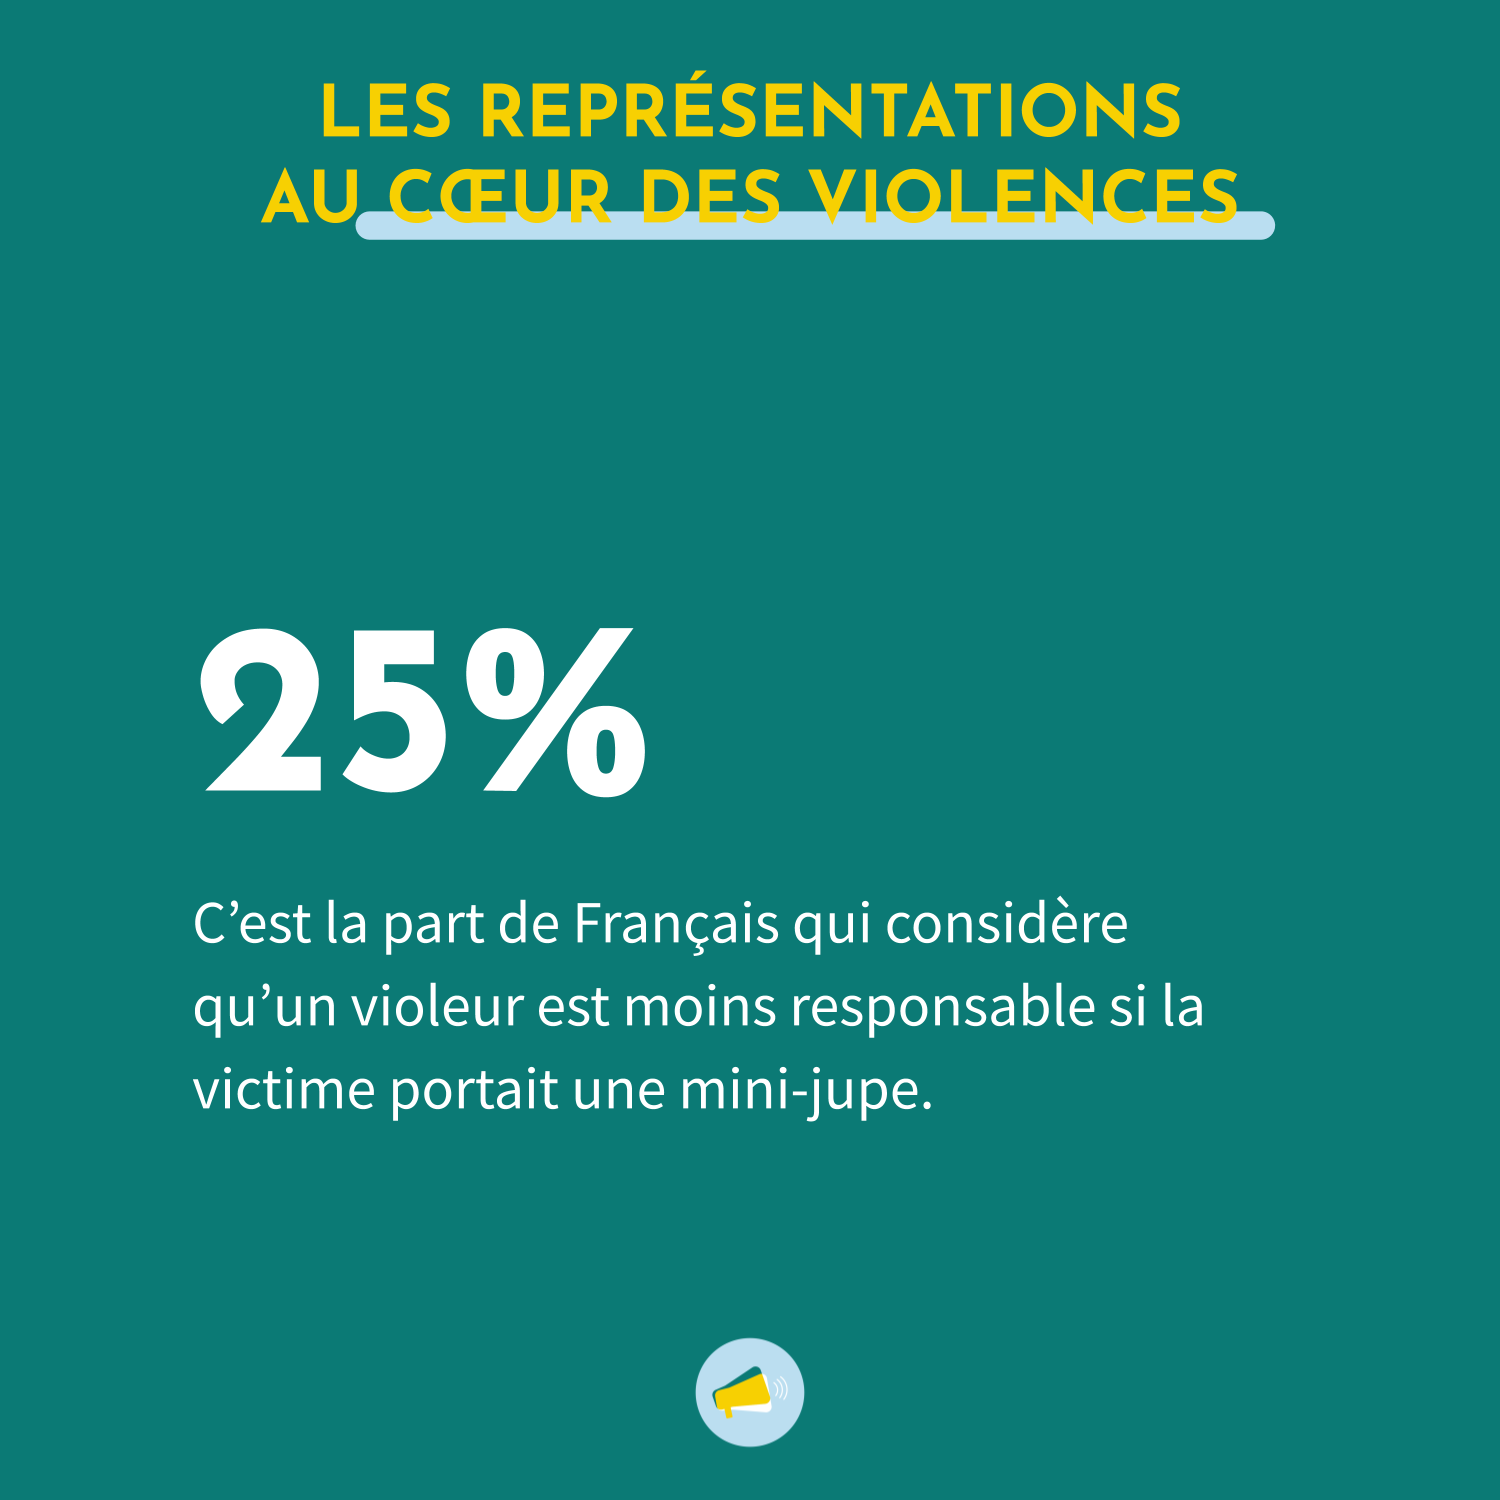 25% des Français considèrent qu'un violeur est moins responsable si la victime portait une mini-jupe. 